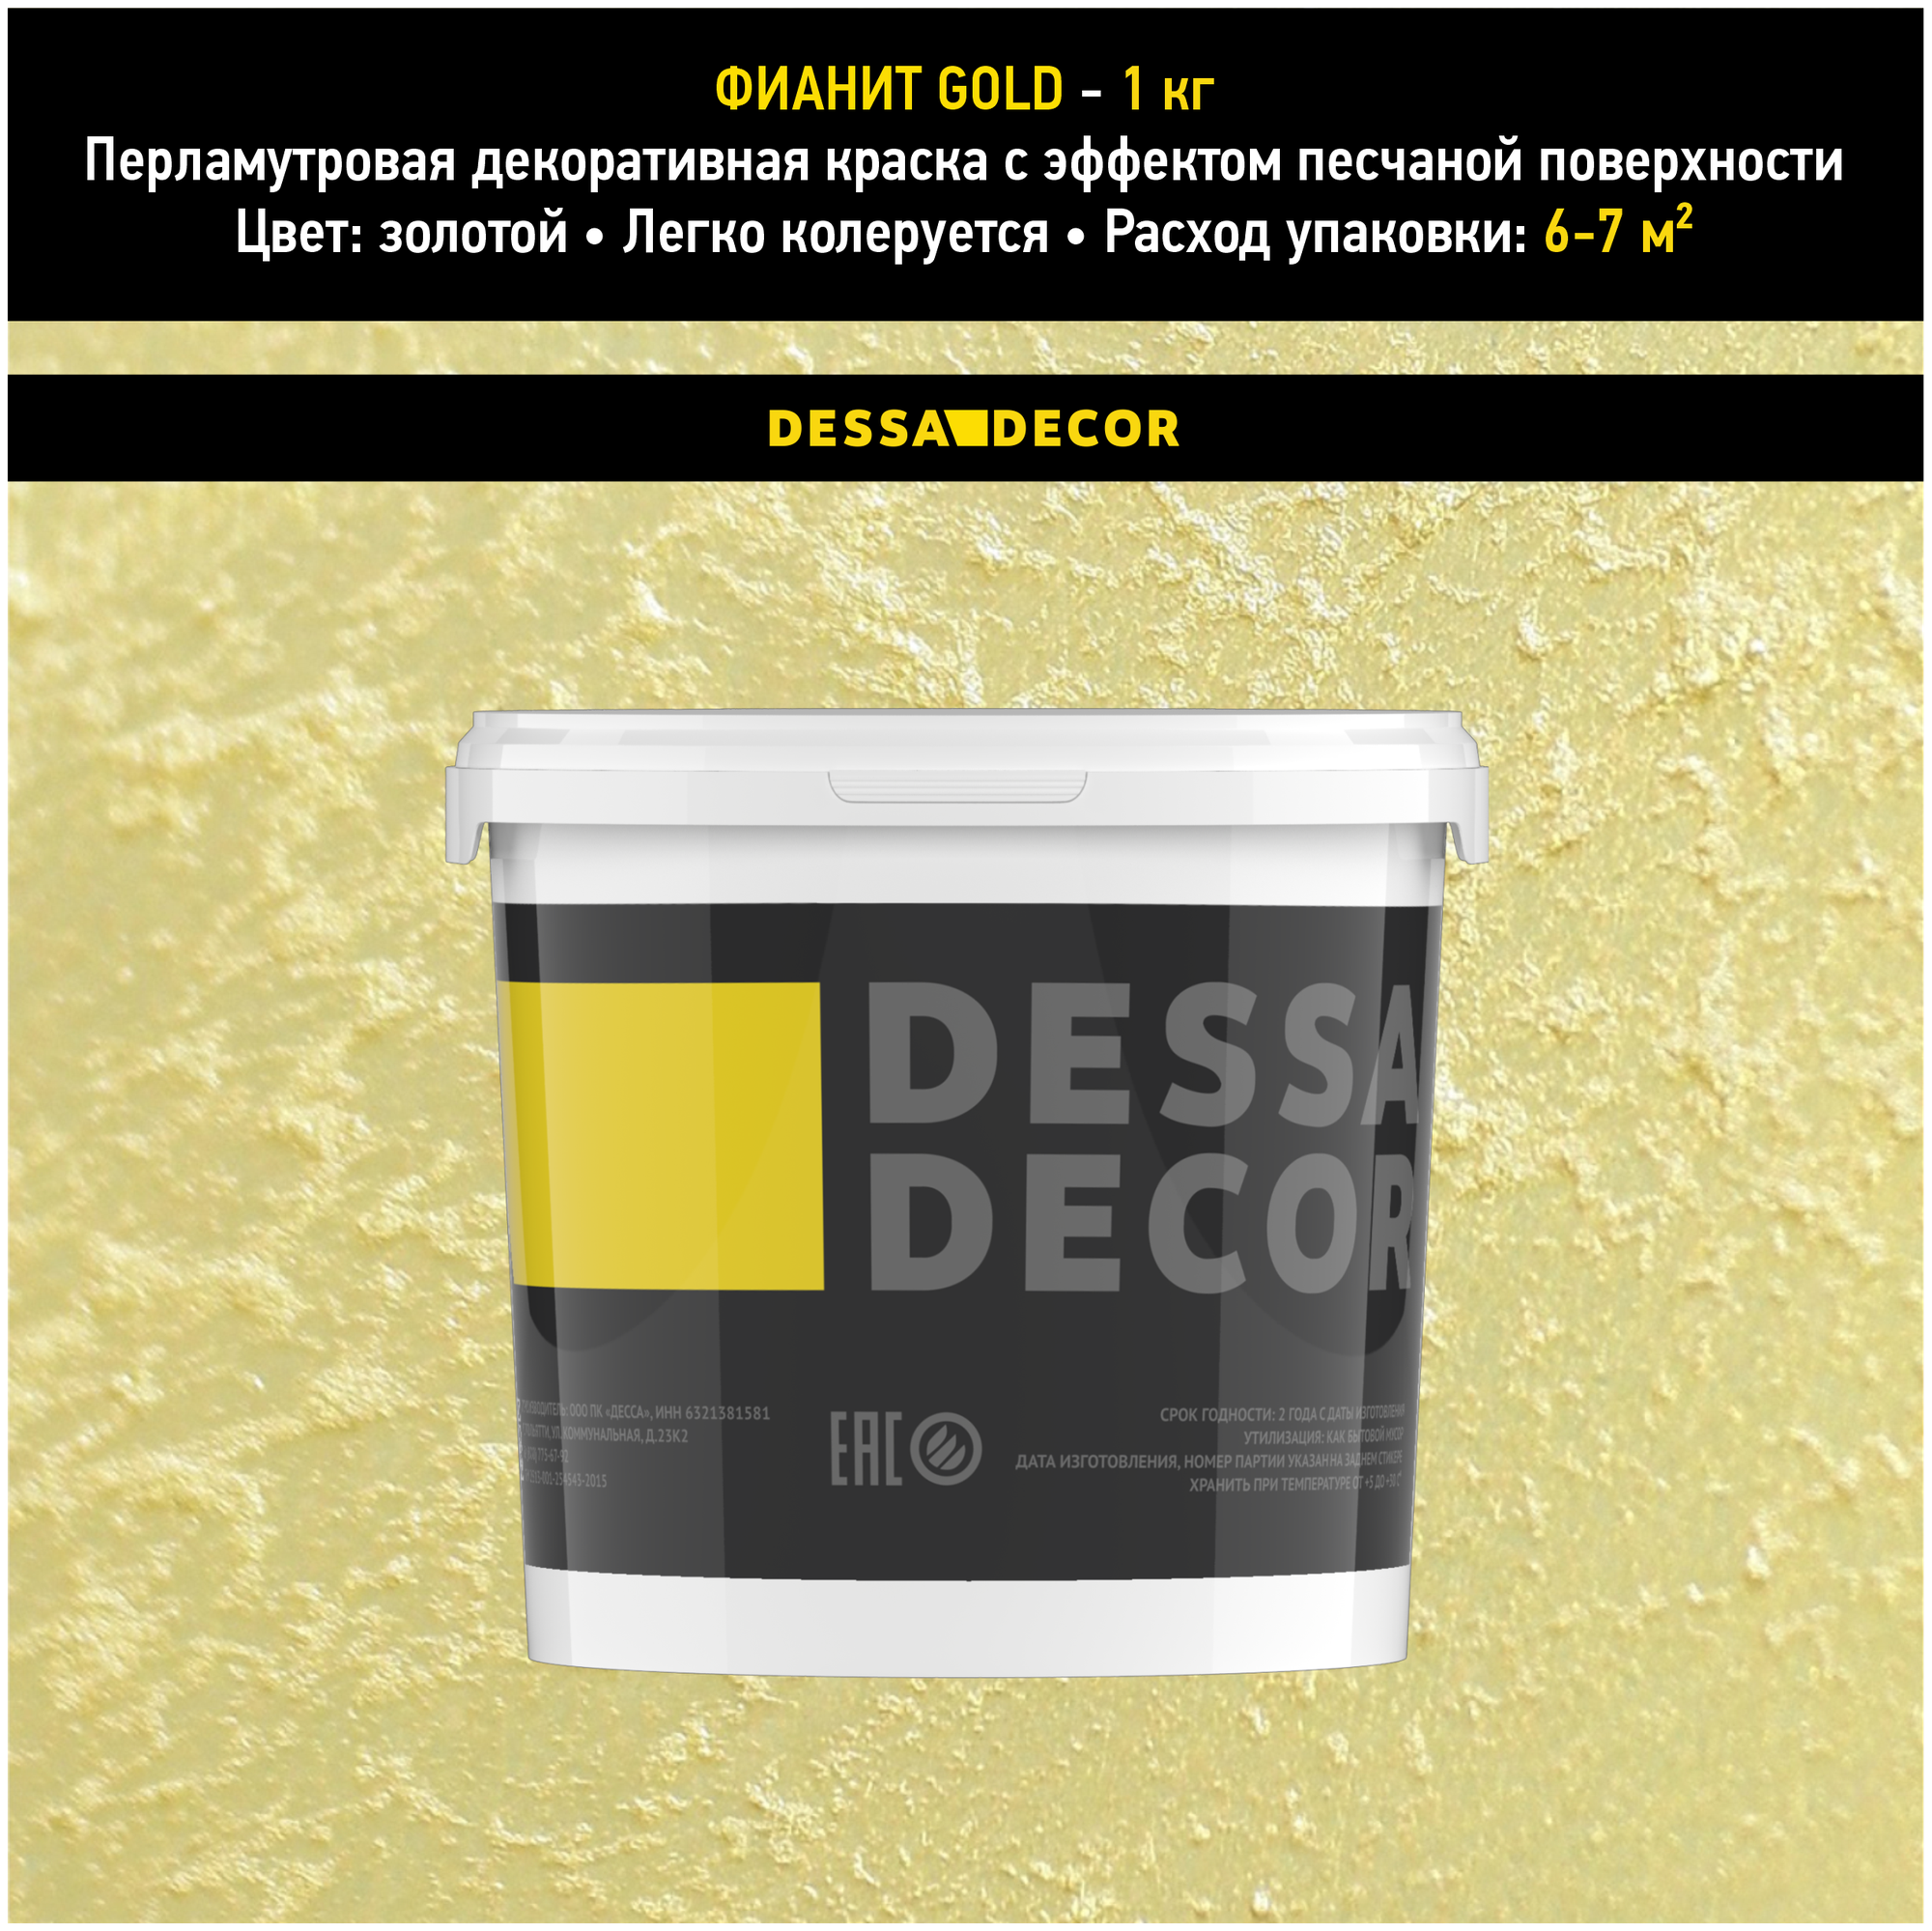 Декоративная краска для стен DESSA DECOR Фианит Gold 1 кг, декоративная штукатурка для стен для имитации песчаной поверхности со стеклянными шариками